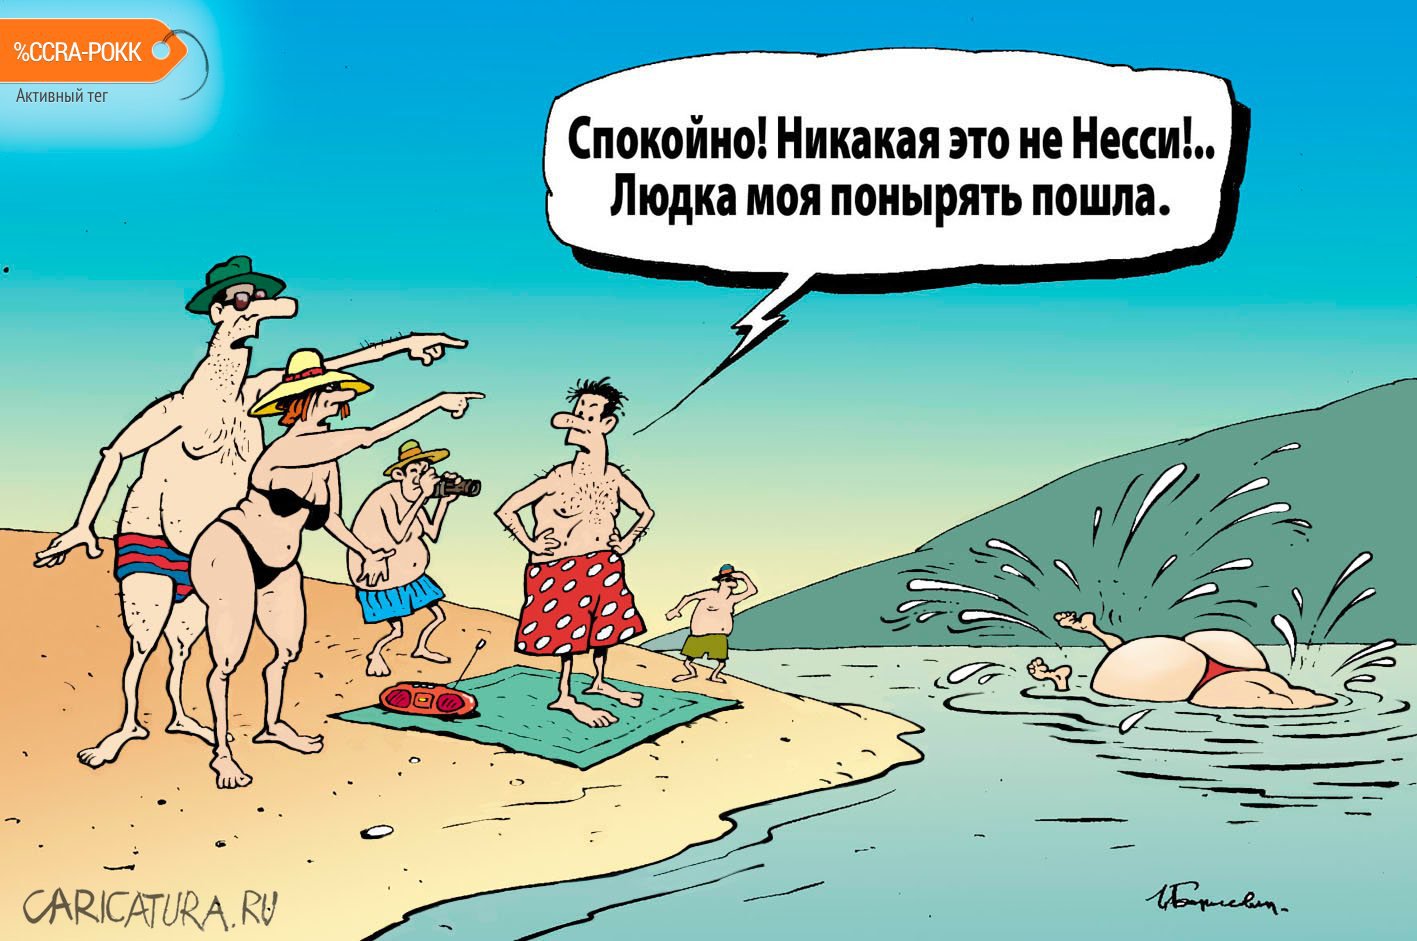 Карикатура "Людка-Несси", Игорь Елистратов